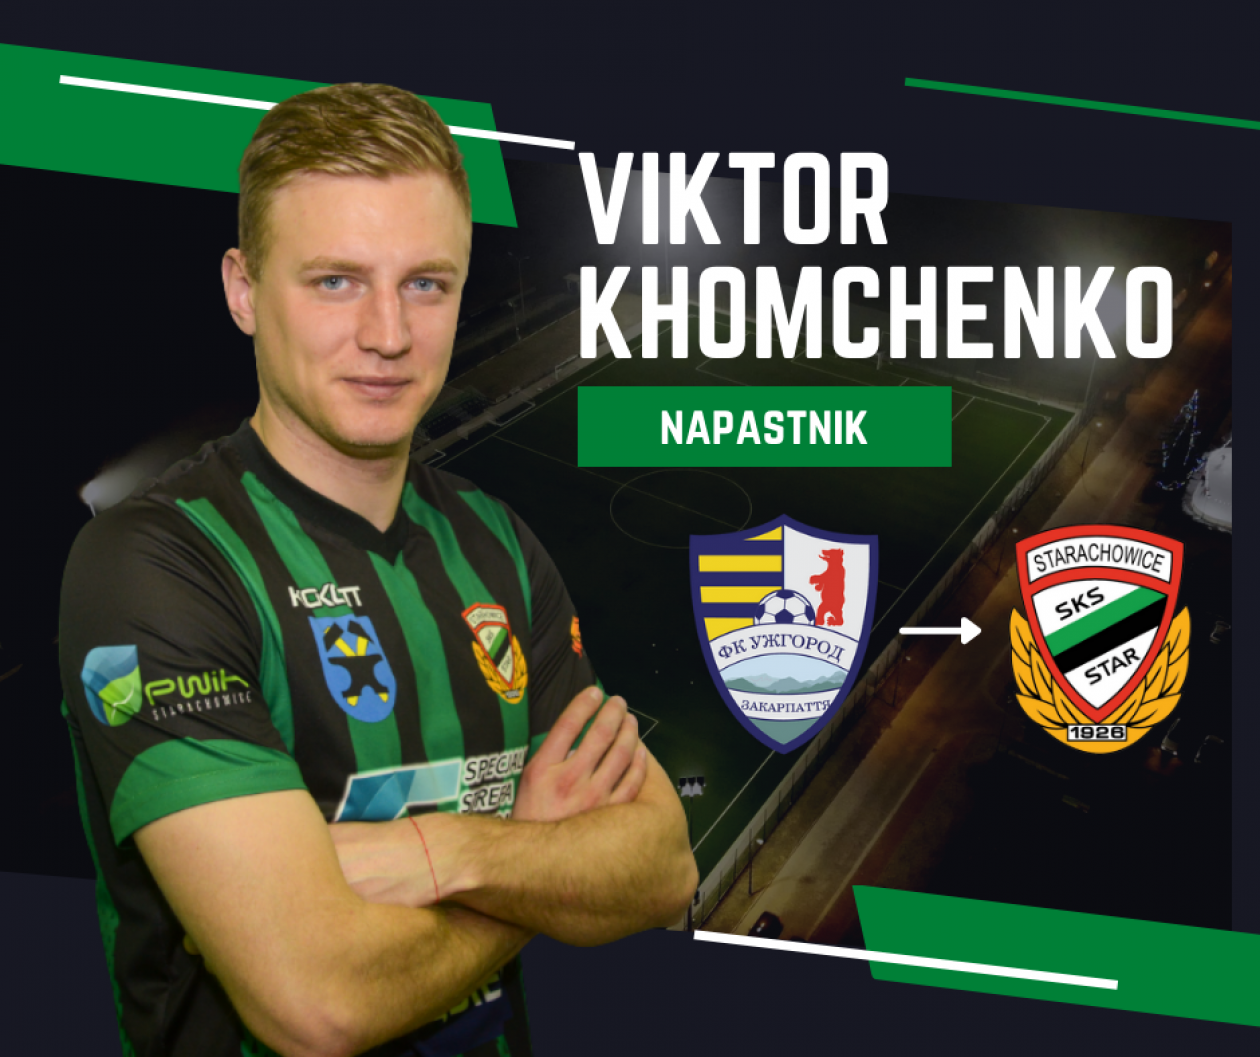 Ukraiński piłkarz Victor Khomechenko wzmocnił Star Starachowice